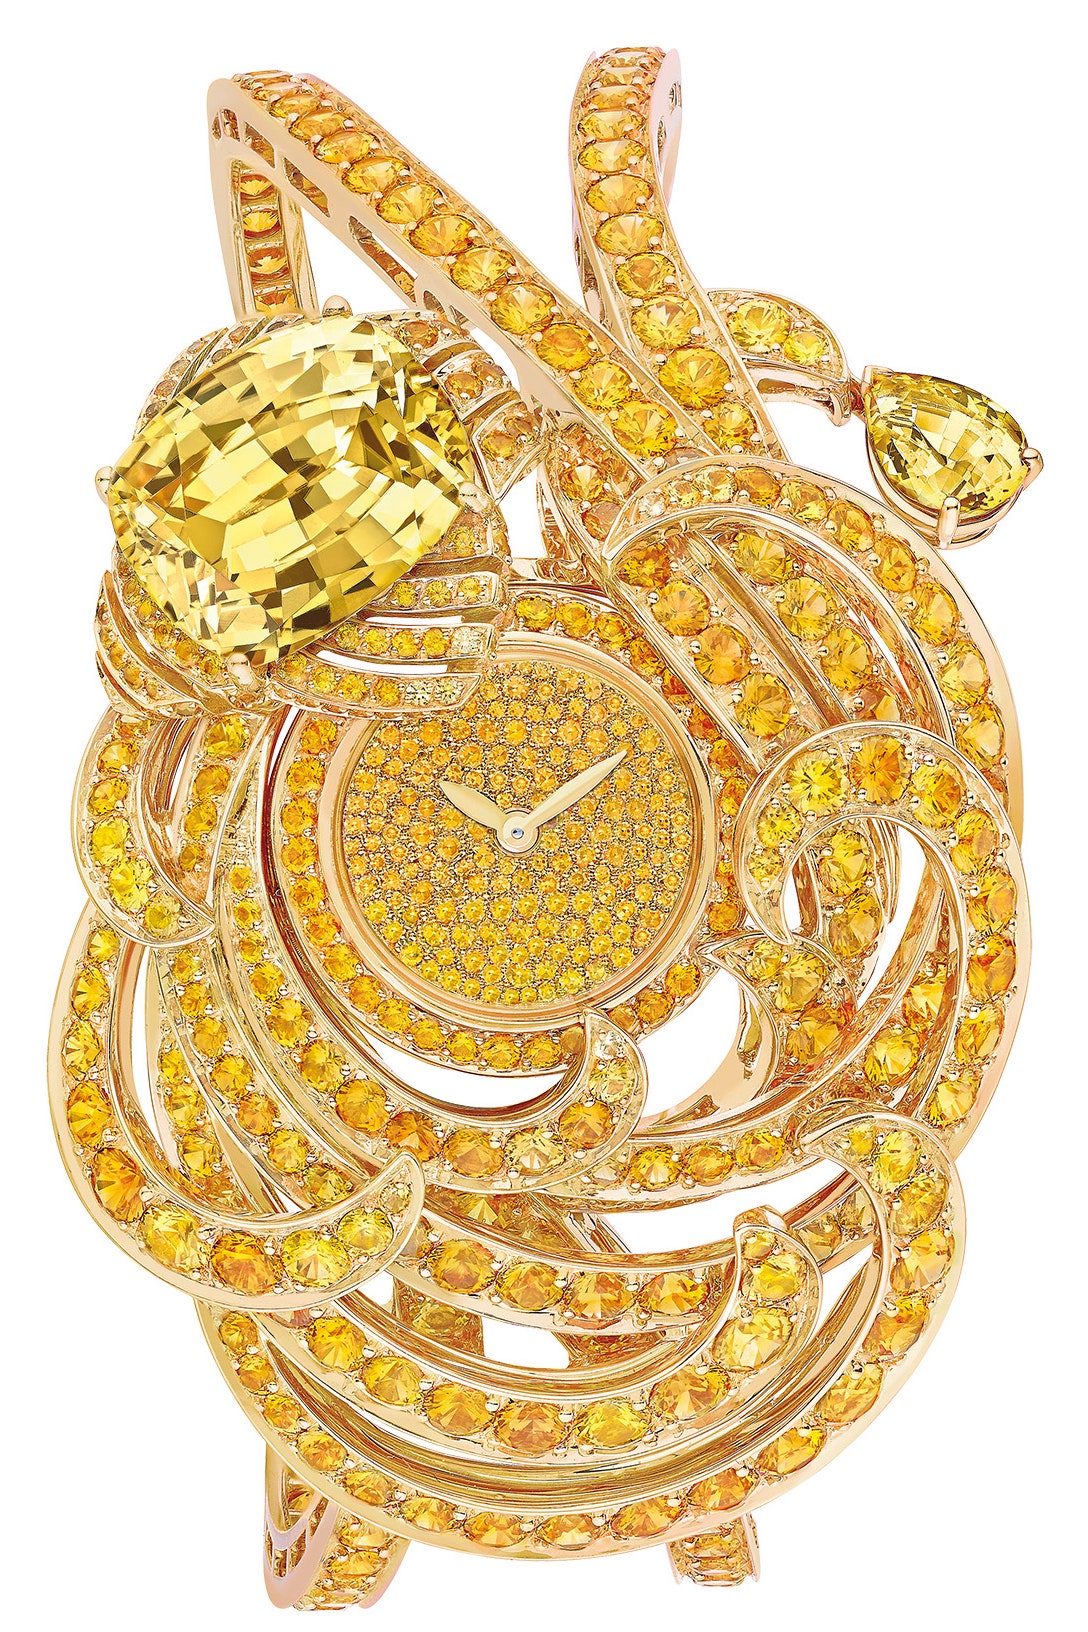 Часы Chaumet в парюрах коллекции Lumières dEau посвященной воде во всех ее проявлениях | Vogue